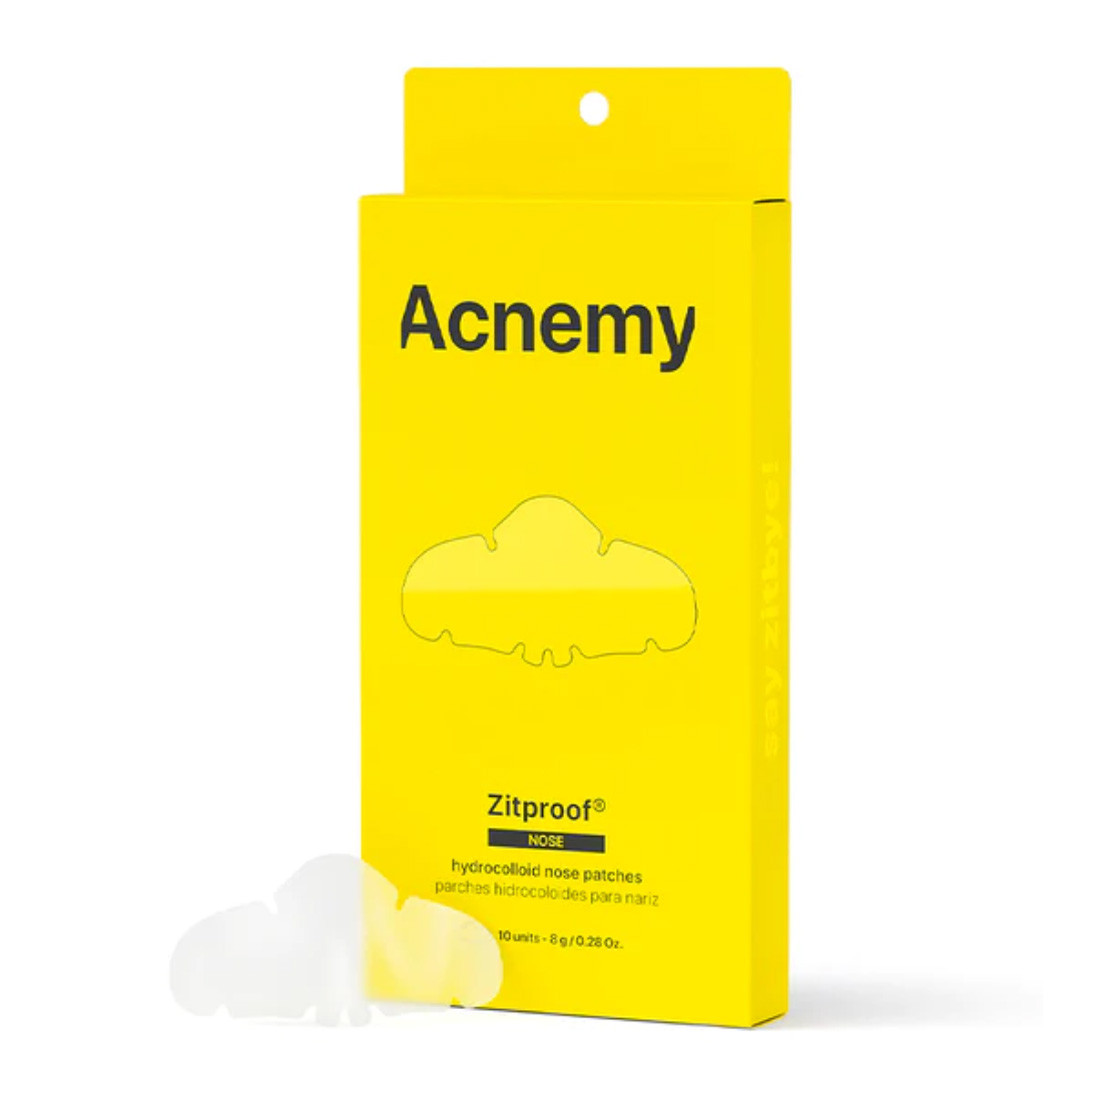 Acnemy Zitproof Nose - Гидроколлоидные пластыри для носа